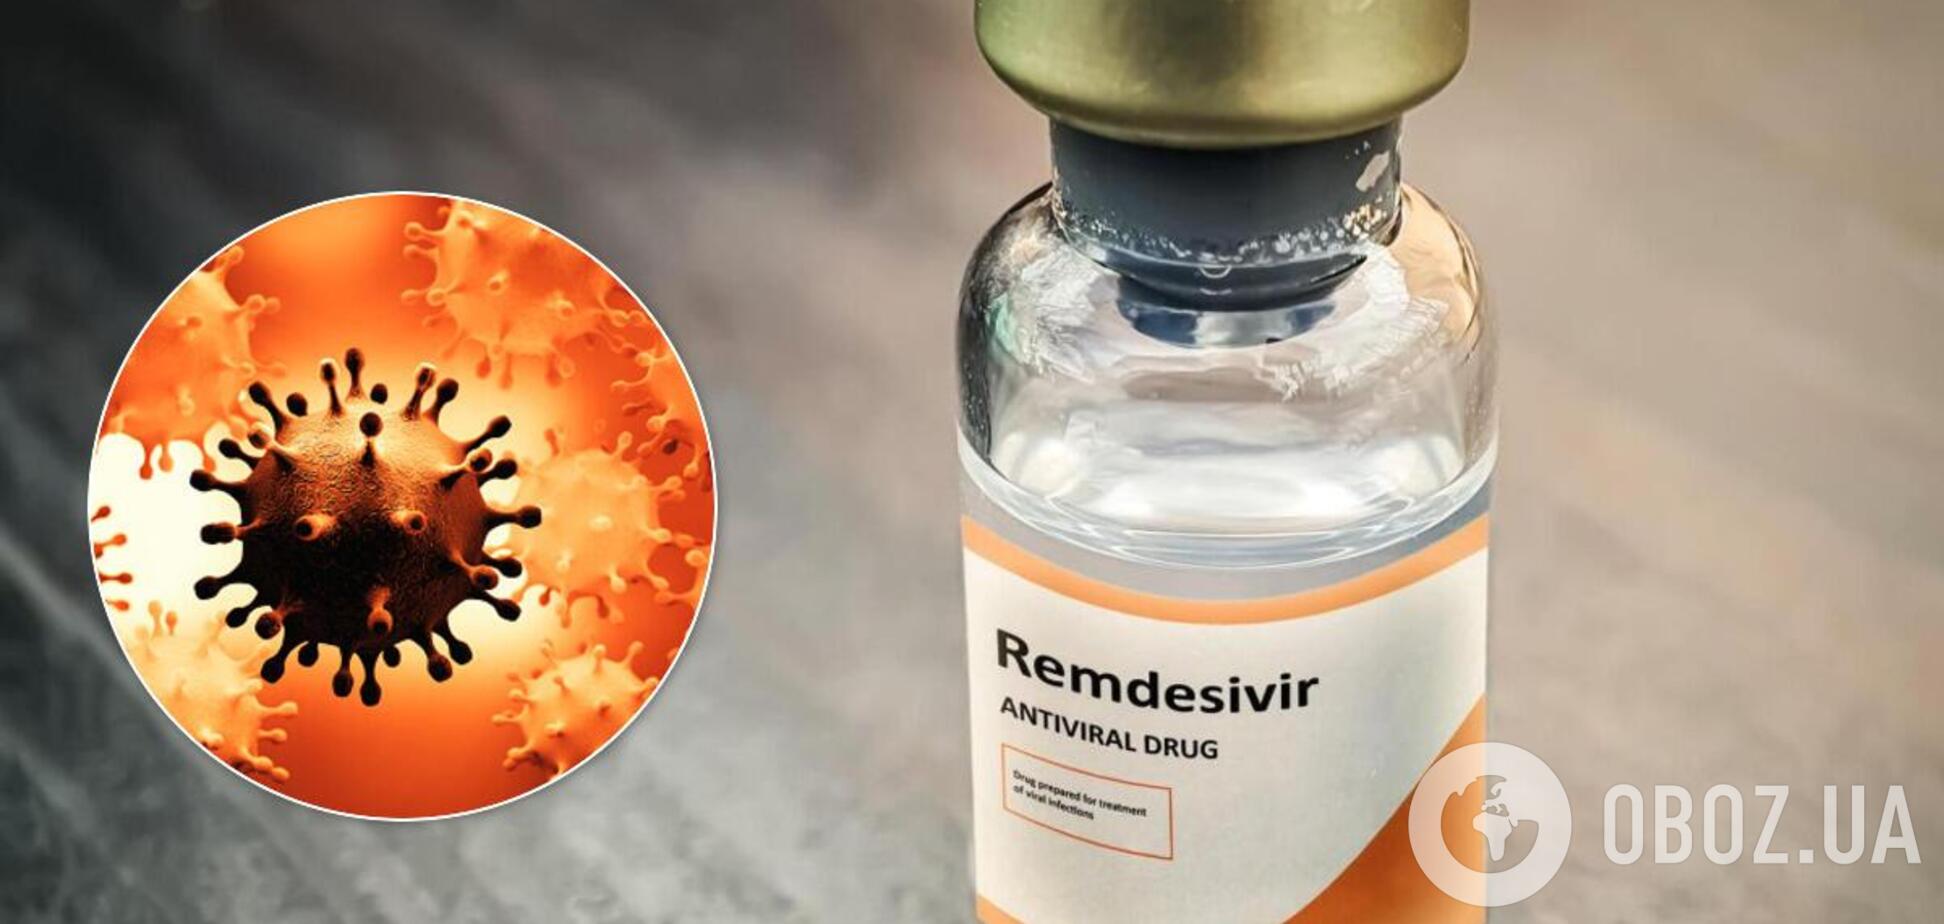 Украина закупит Ремдесивир для лечения коронавируса